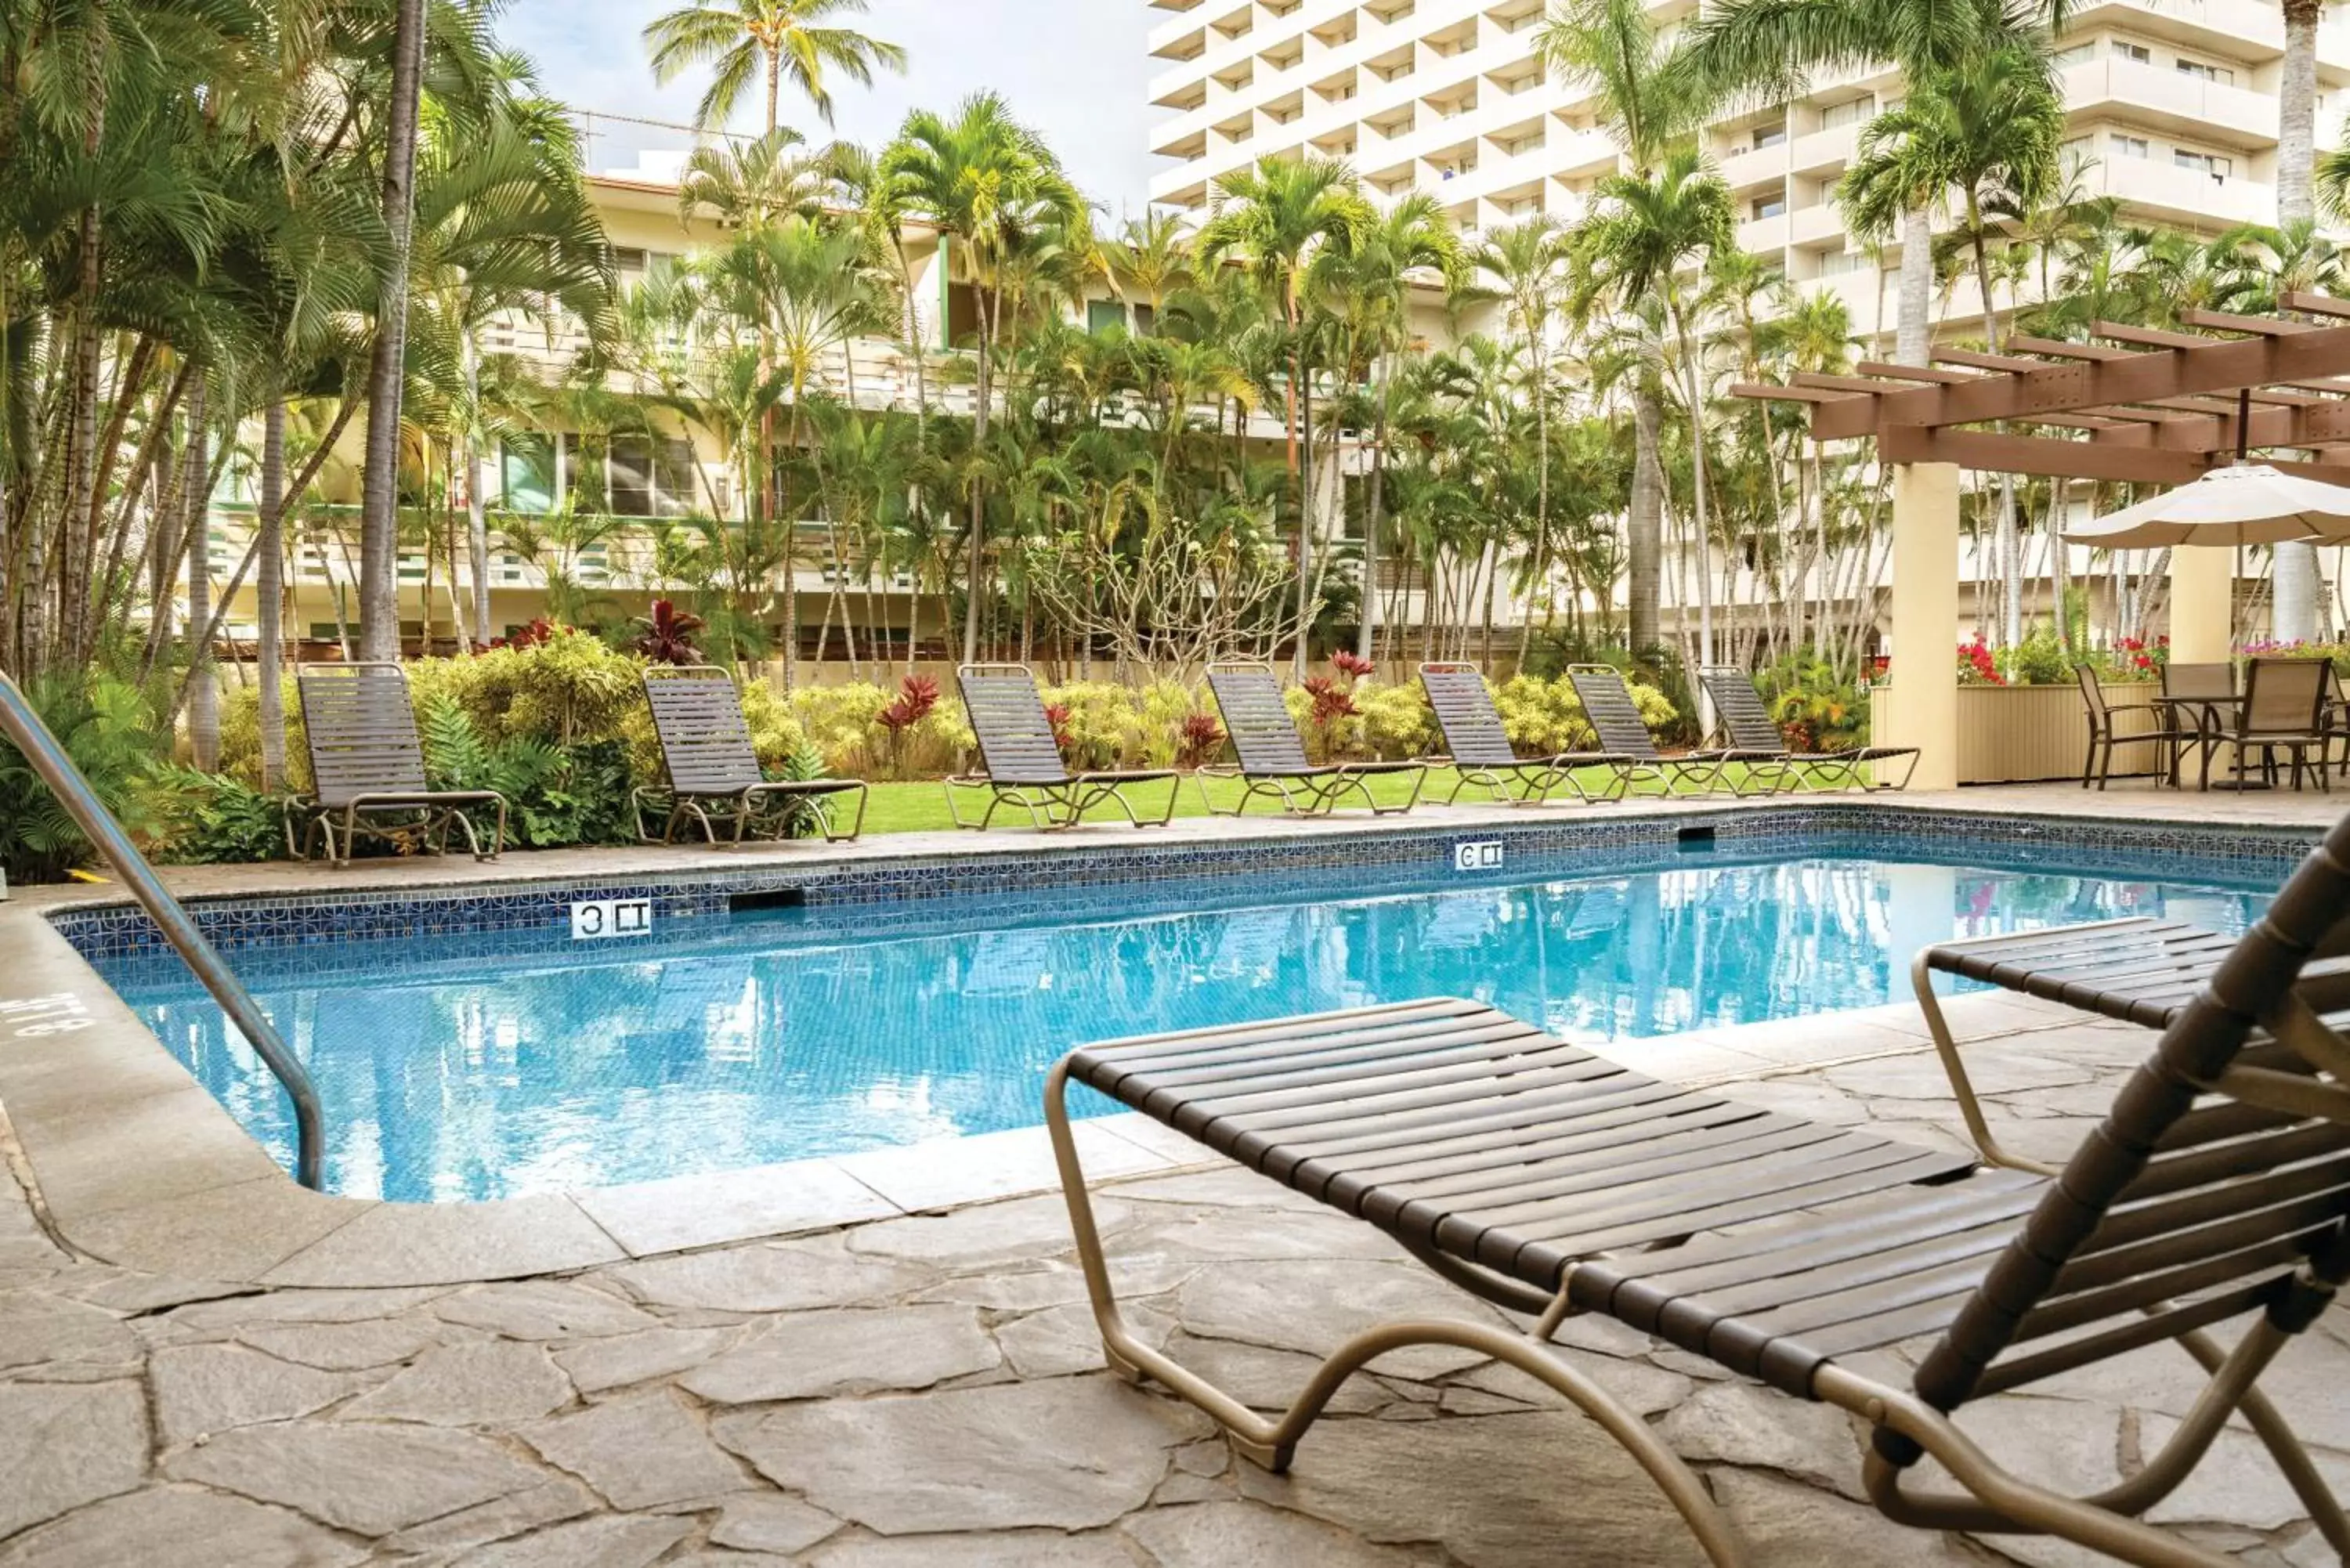 Swimming Pool in Wyndham Vacation Resorts Royal Garden at Waikiki